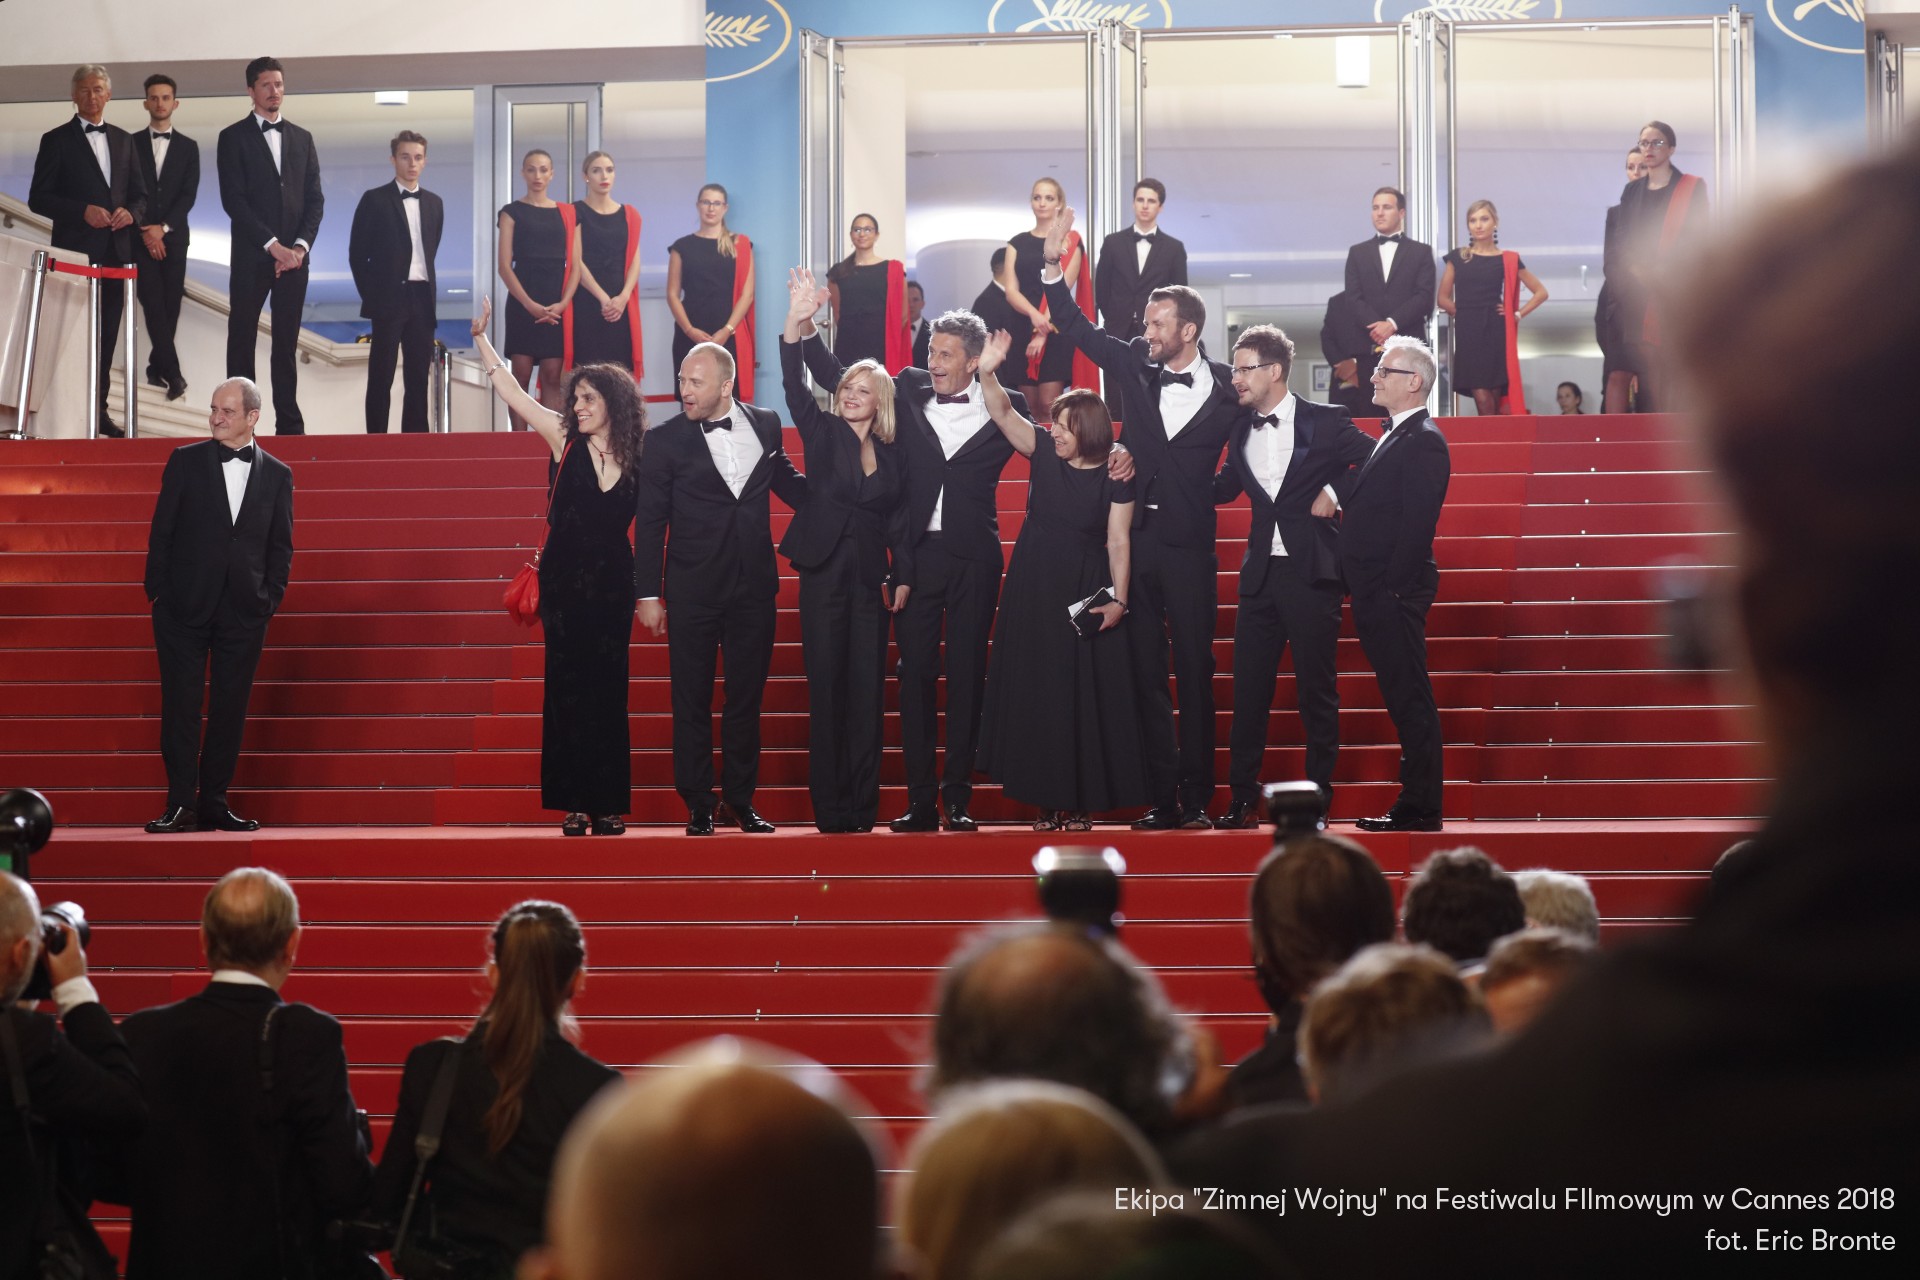 Ekipa "Zimnej Wojny" na Festiwalu Filmowycm w Cannes 2018